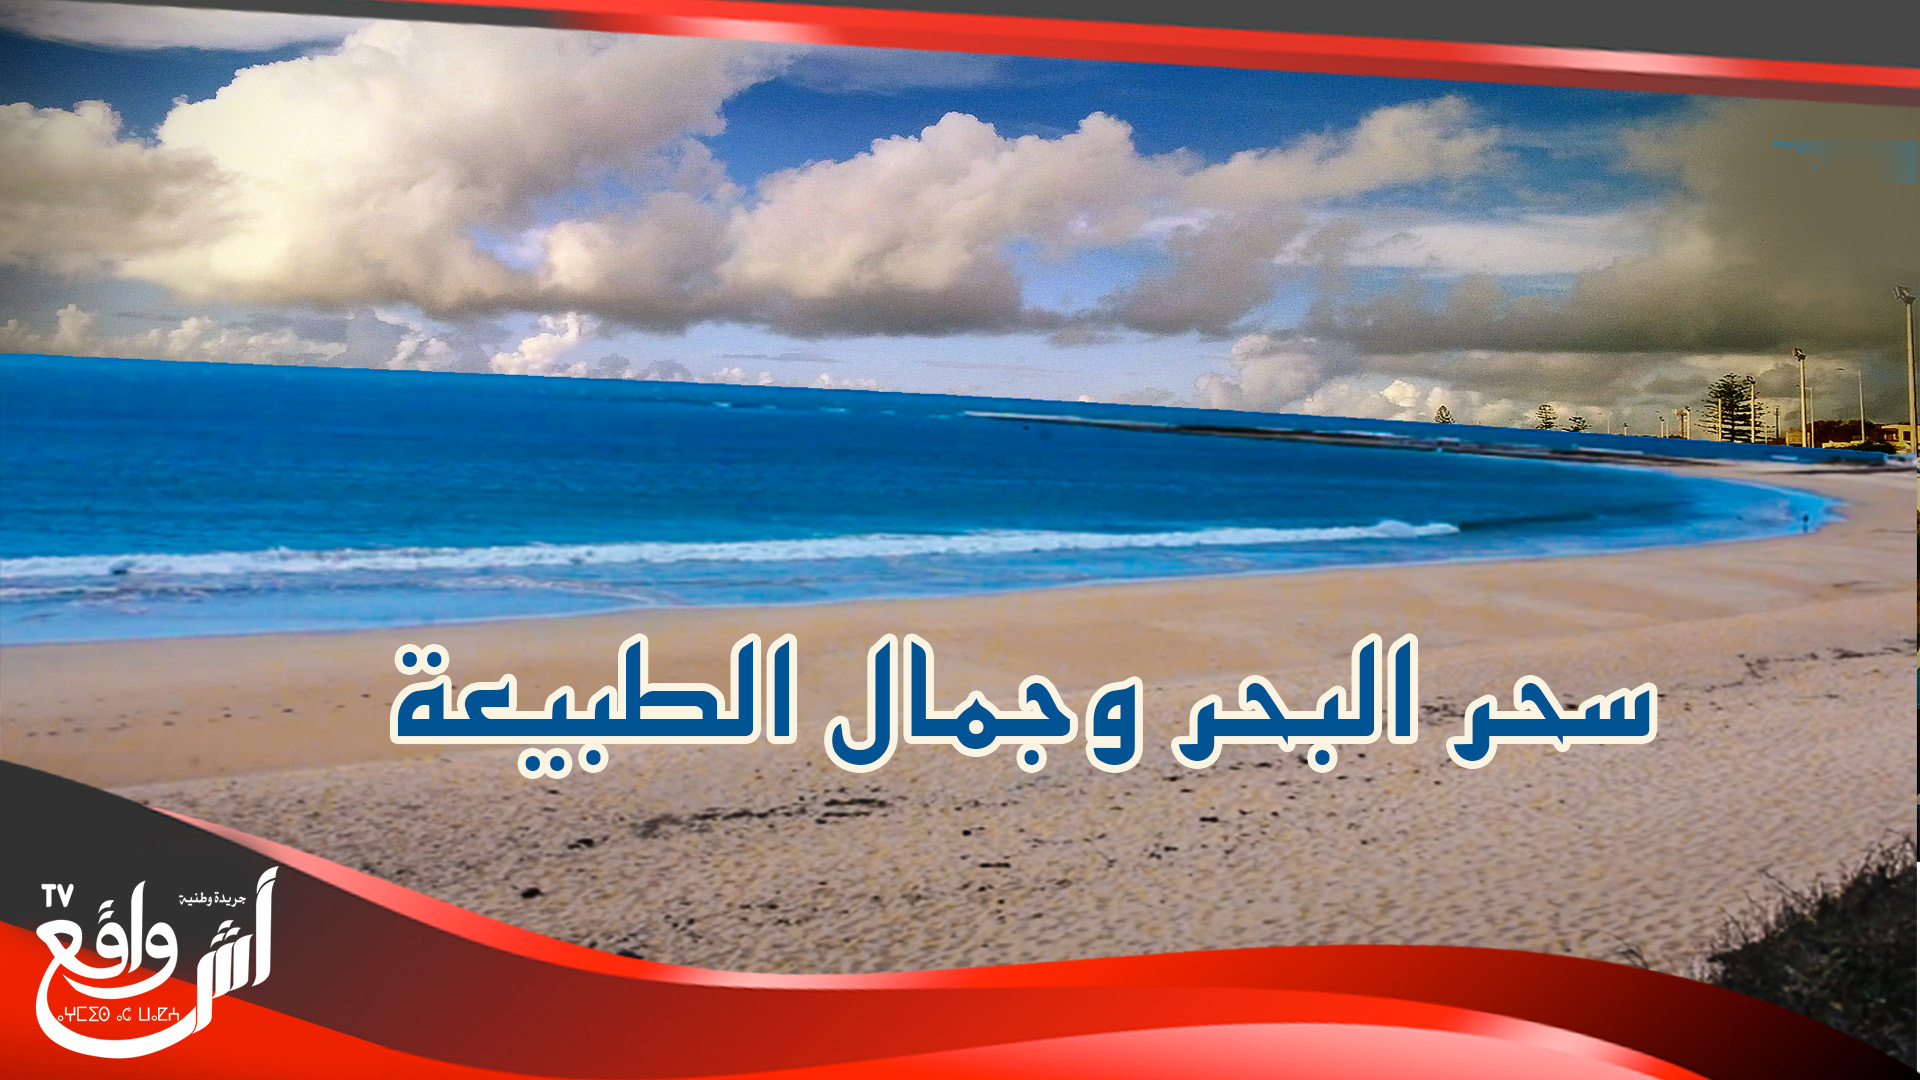 هكذا أصبح شاطئ منتجع سيدي بوزيد بعد إعلان الجديدة ضمن المنطقة 2...سحر البحر وجمال الطبيعة